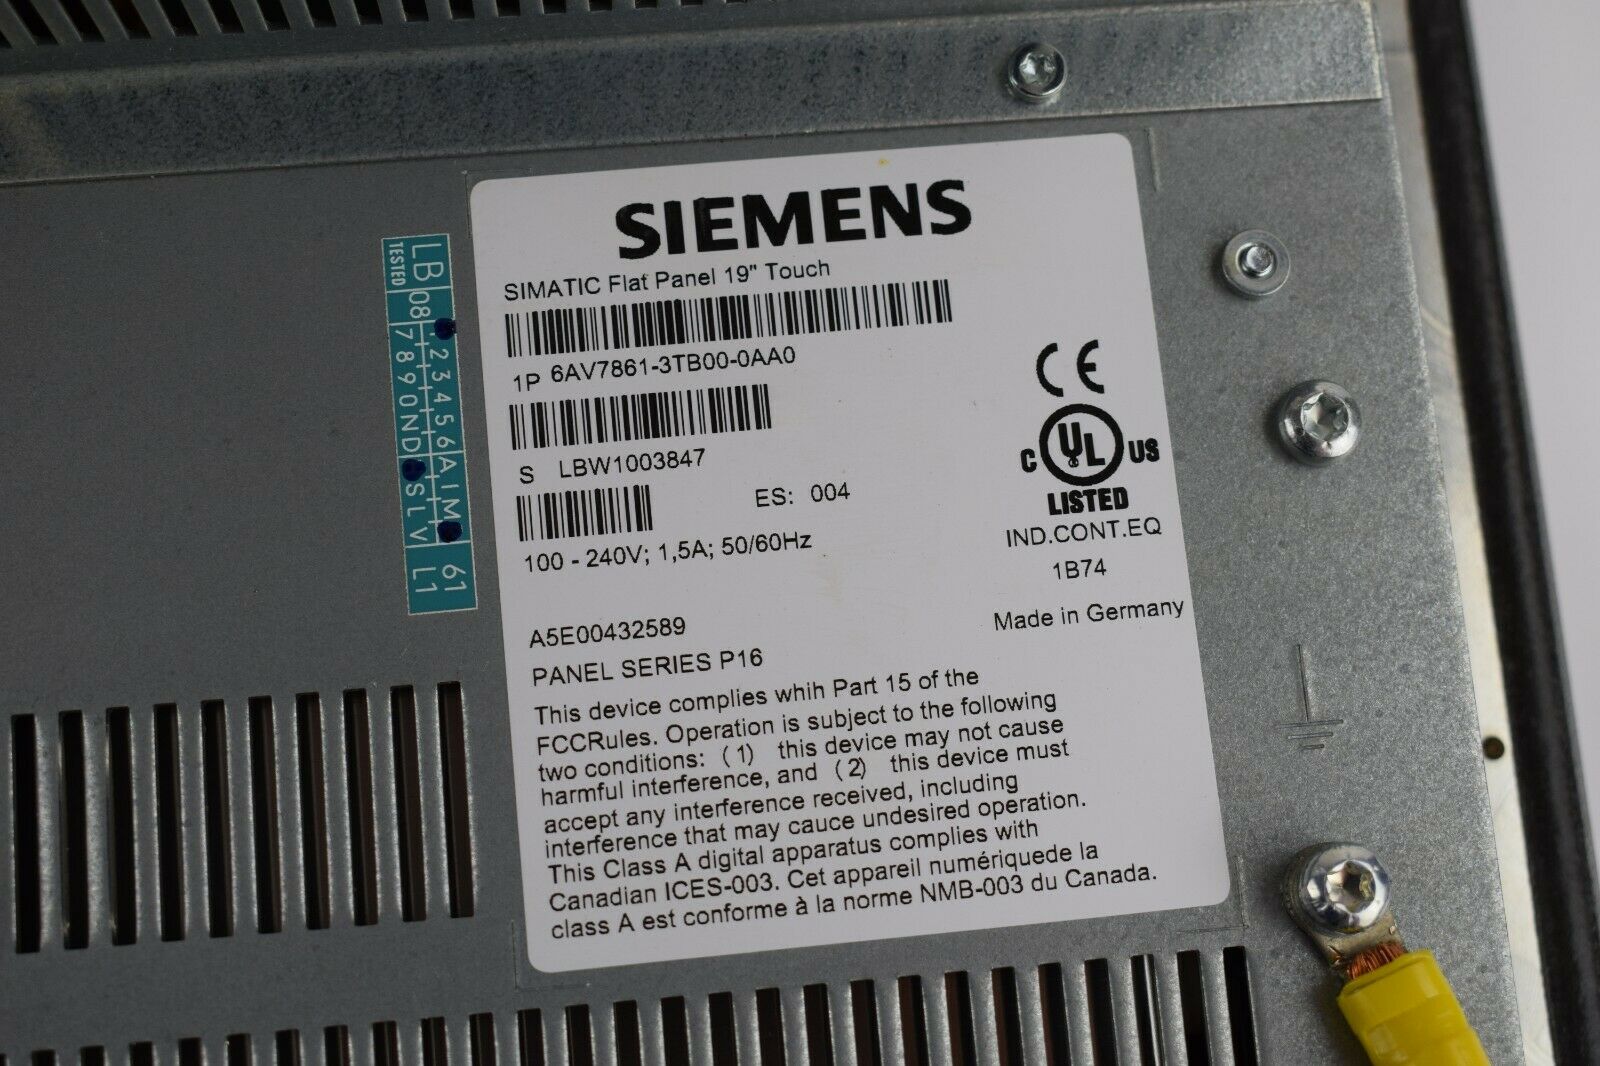 Siemens simatic Flat Panel 19" Touch 6AV7861-3TB00-0AA0 ( 6AV7 861-3TB00-0AA0 )